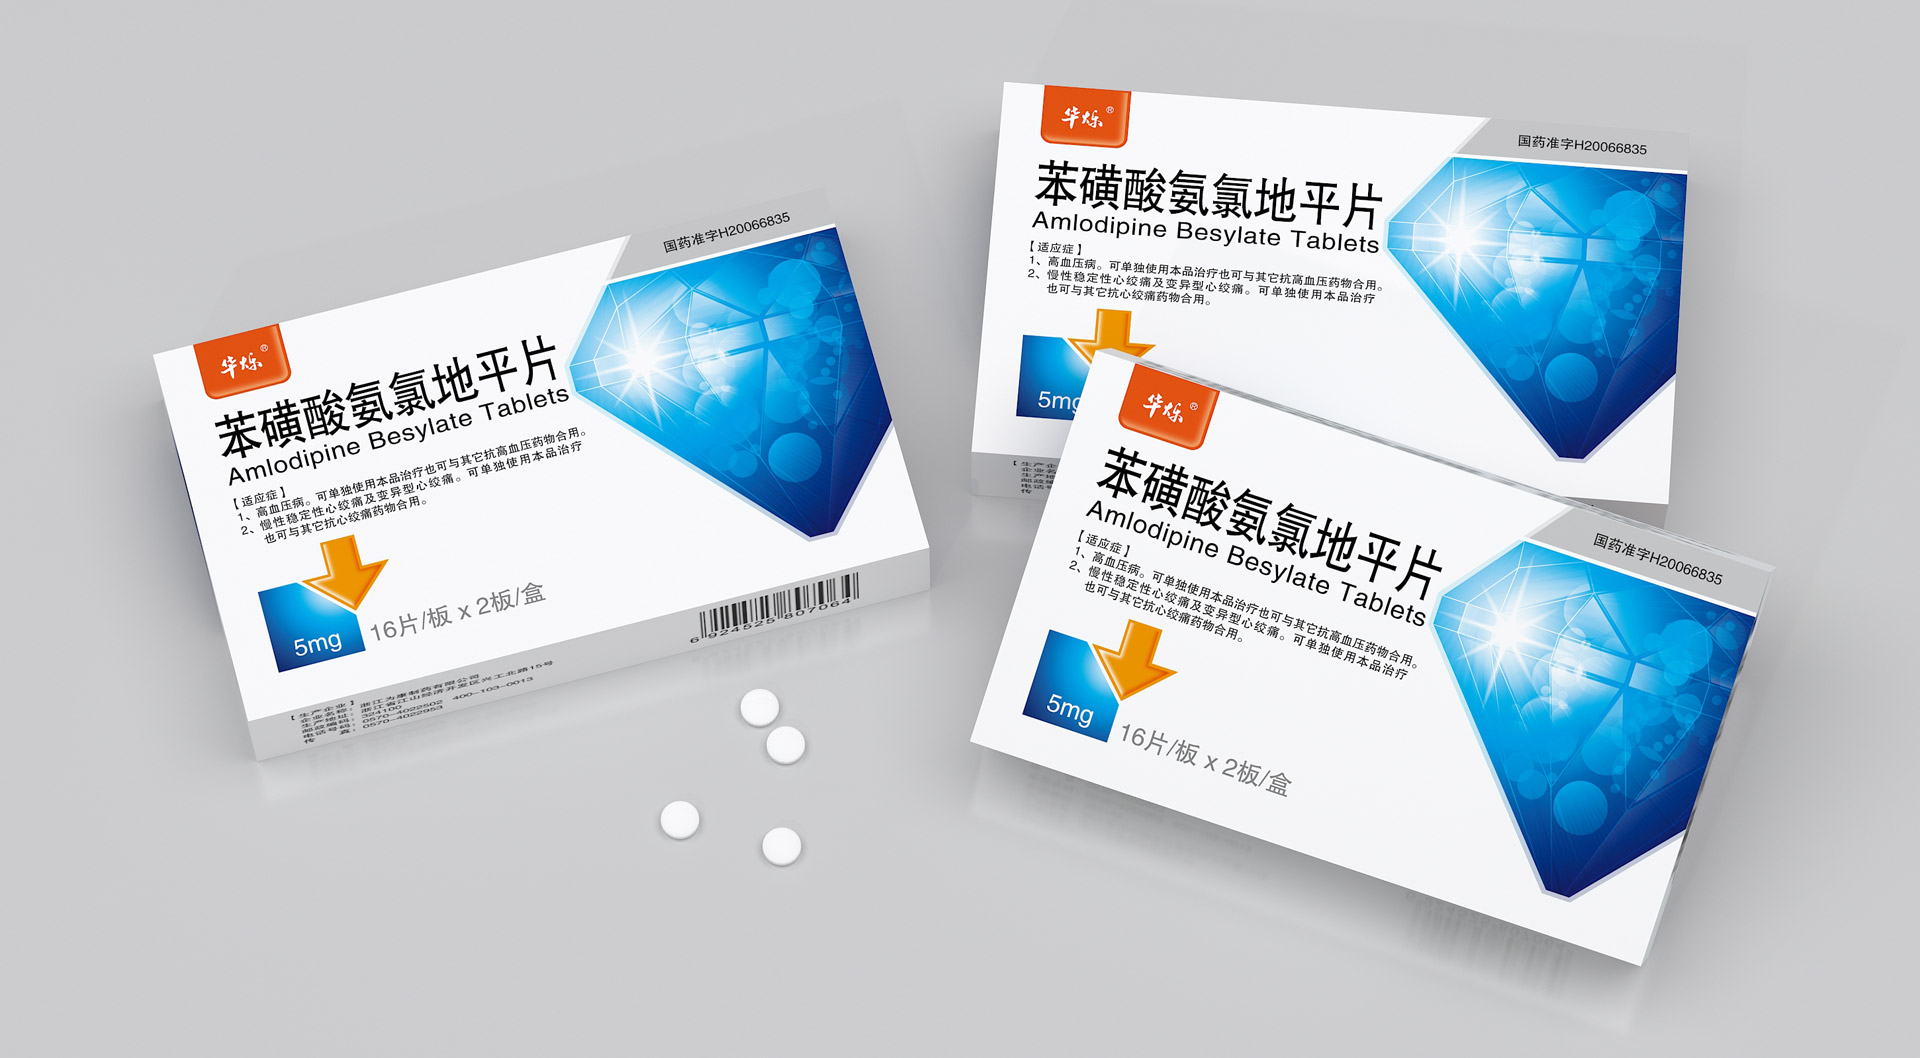 专业药品包装设计公司，医药包装设计公司，上海包装设计公司，药品全案设计公司